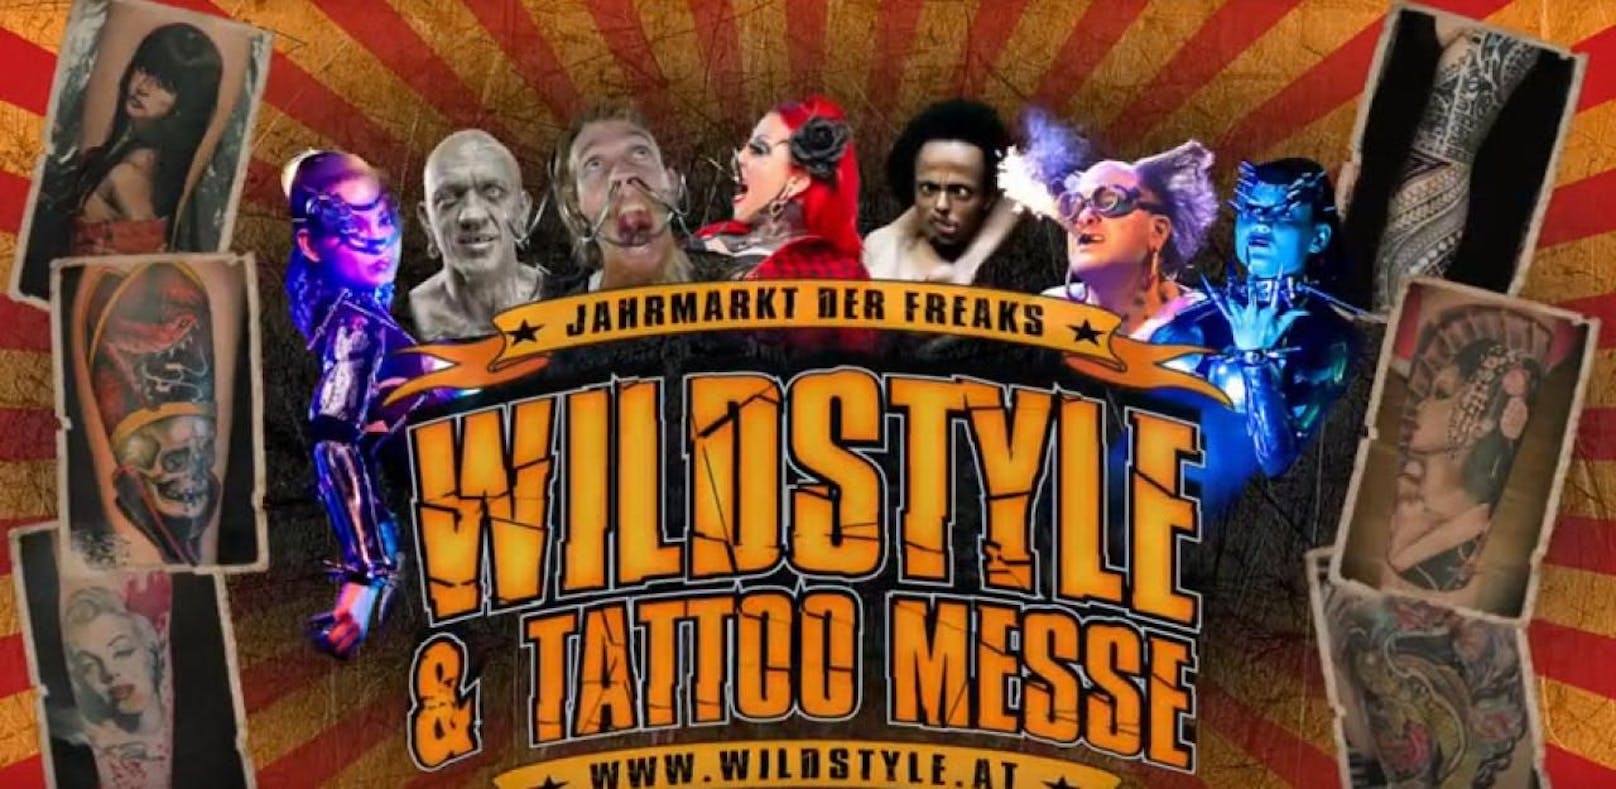 Die Wildstyle & Tattoo Messe kommt nach Wien